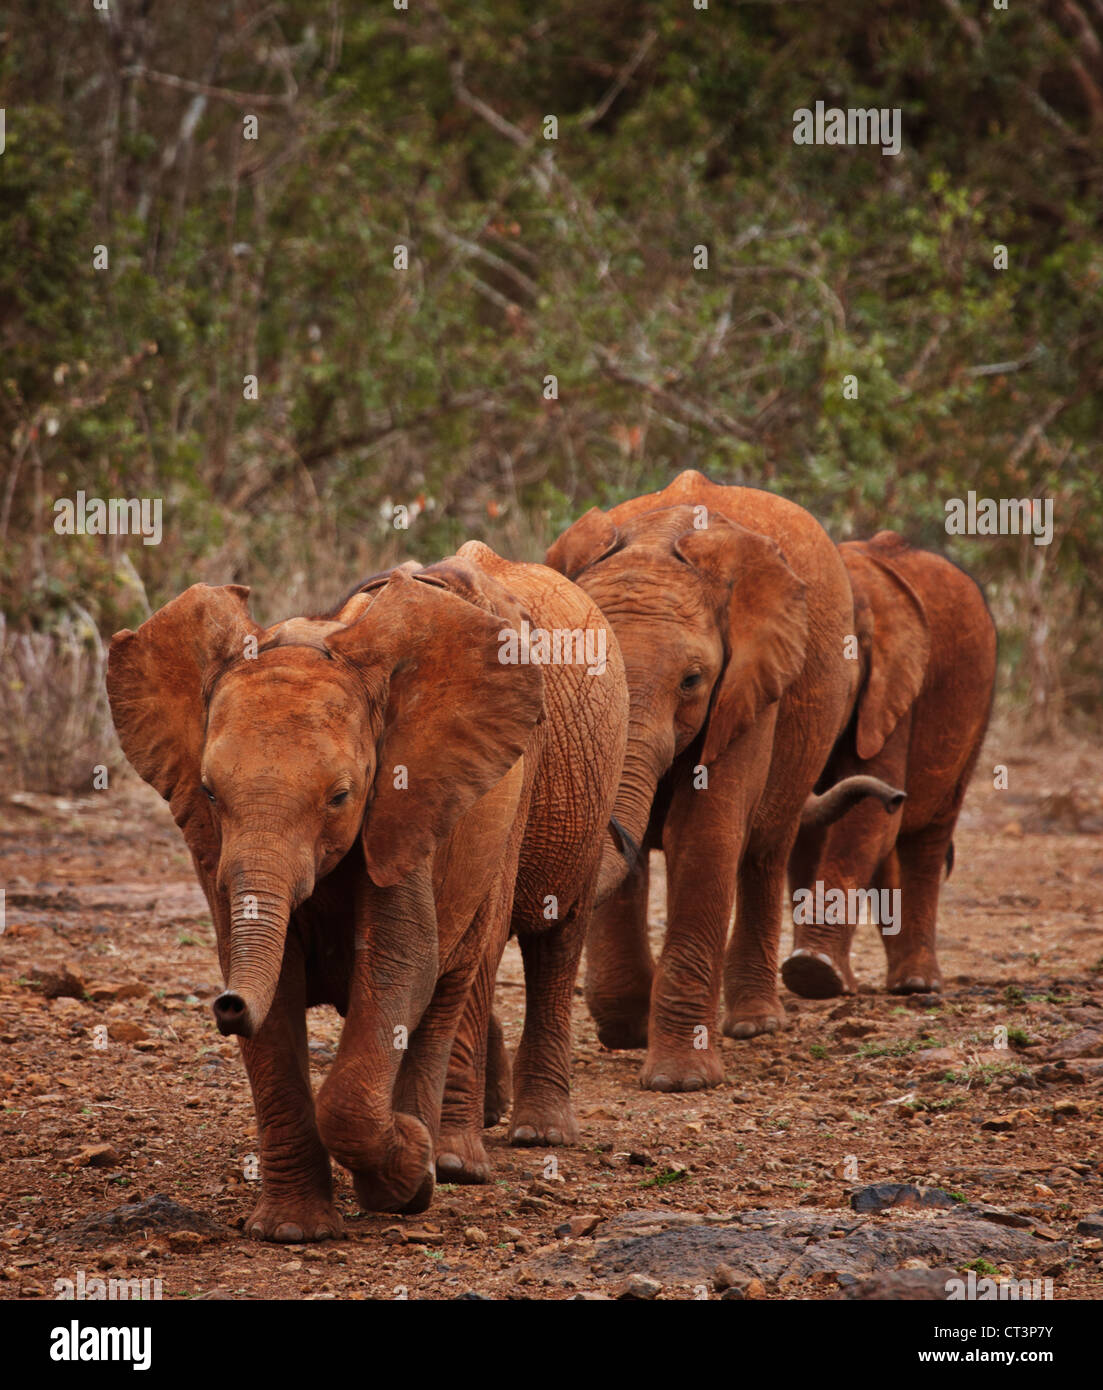 Les éléphants marchant ensemble sur le chemin Banque D'Images